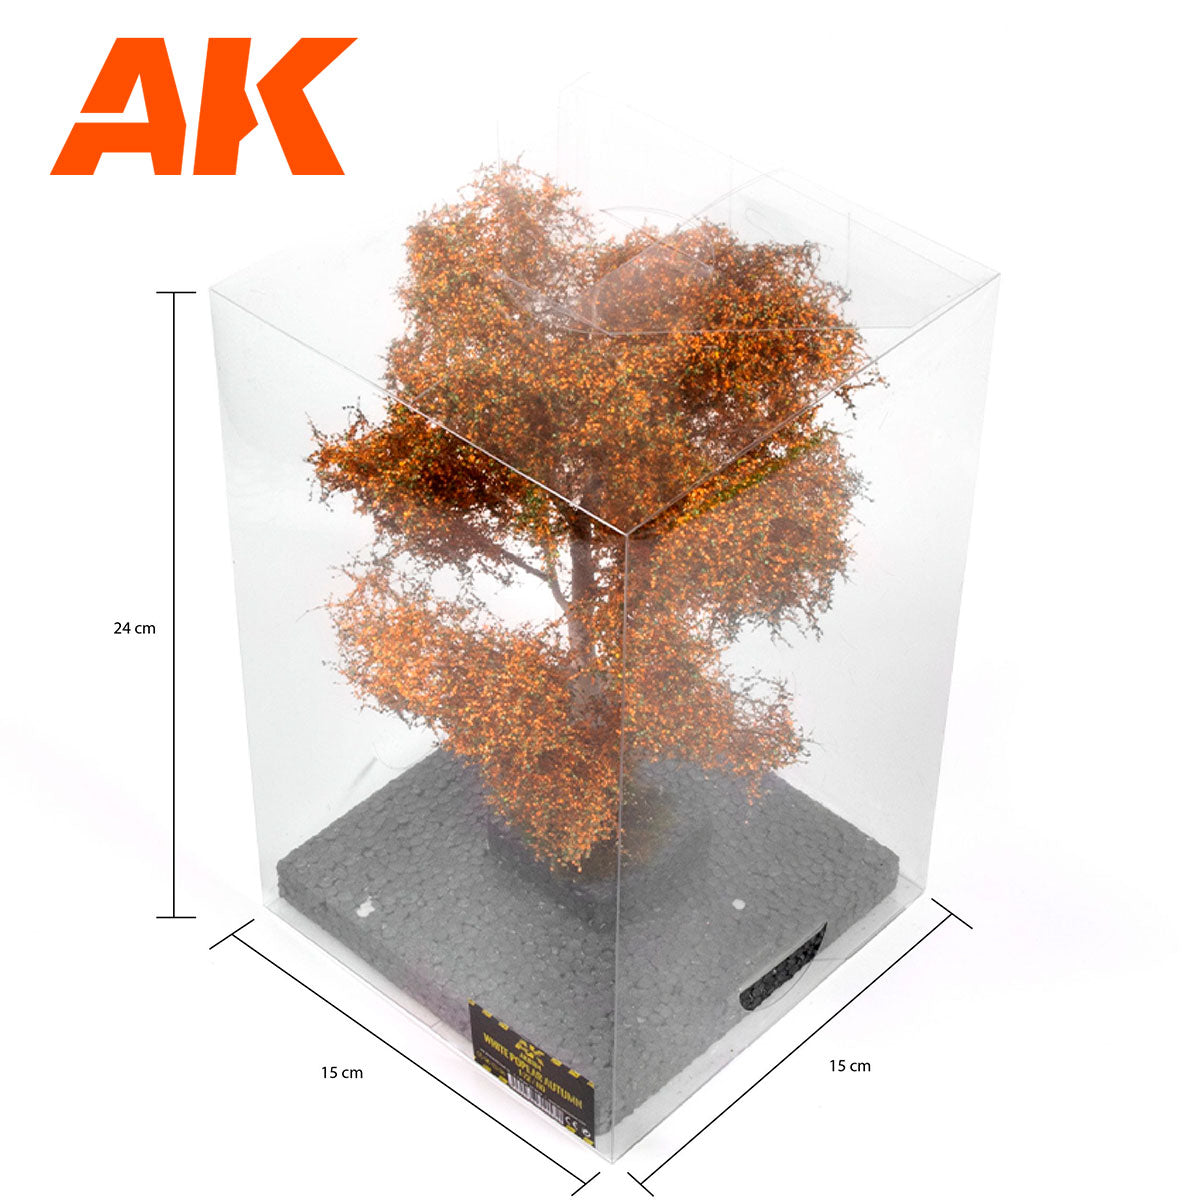 AK8184 - White poplar Autumn Tree 1/72